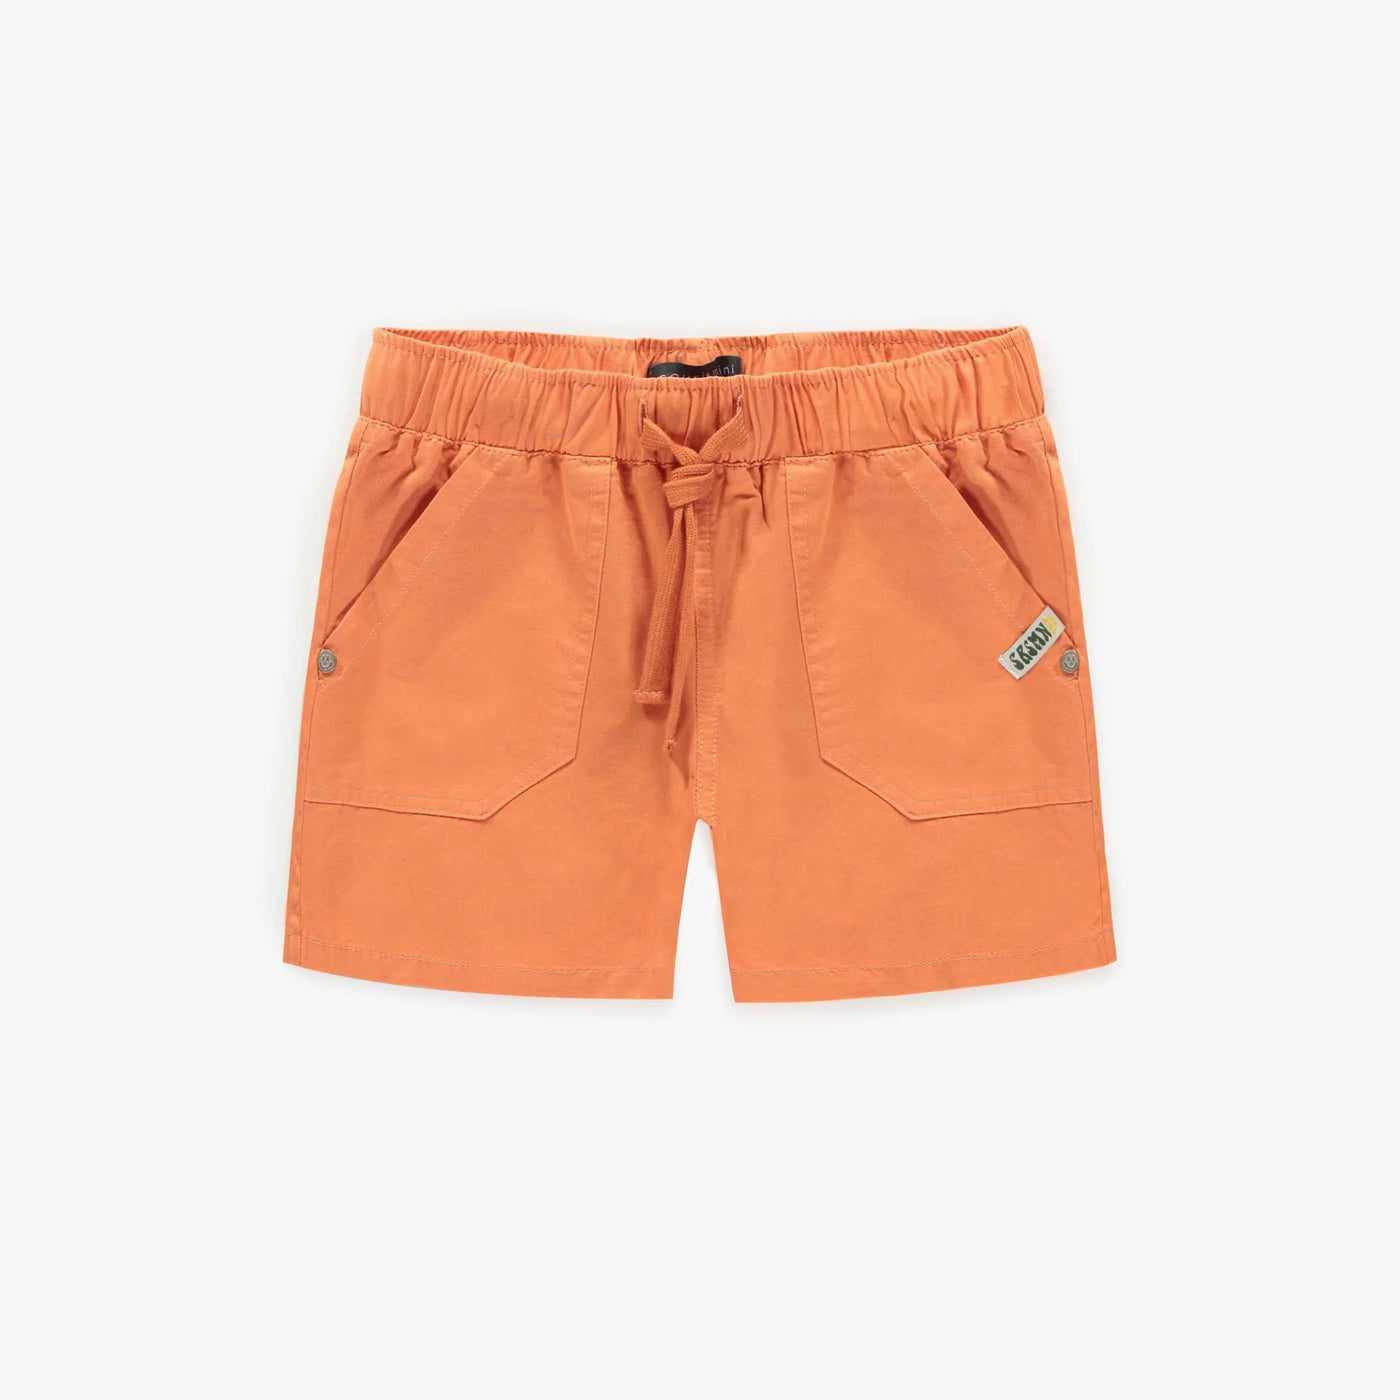 Souris Mini - Orange Short in Cotton Twill